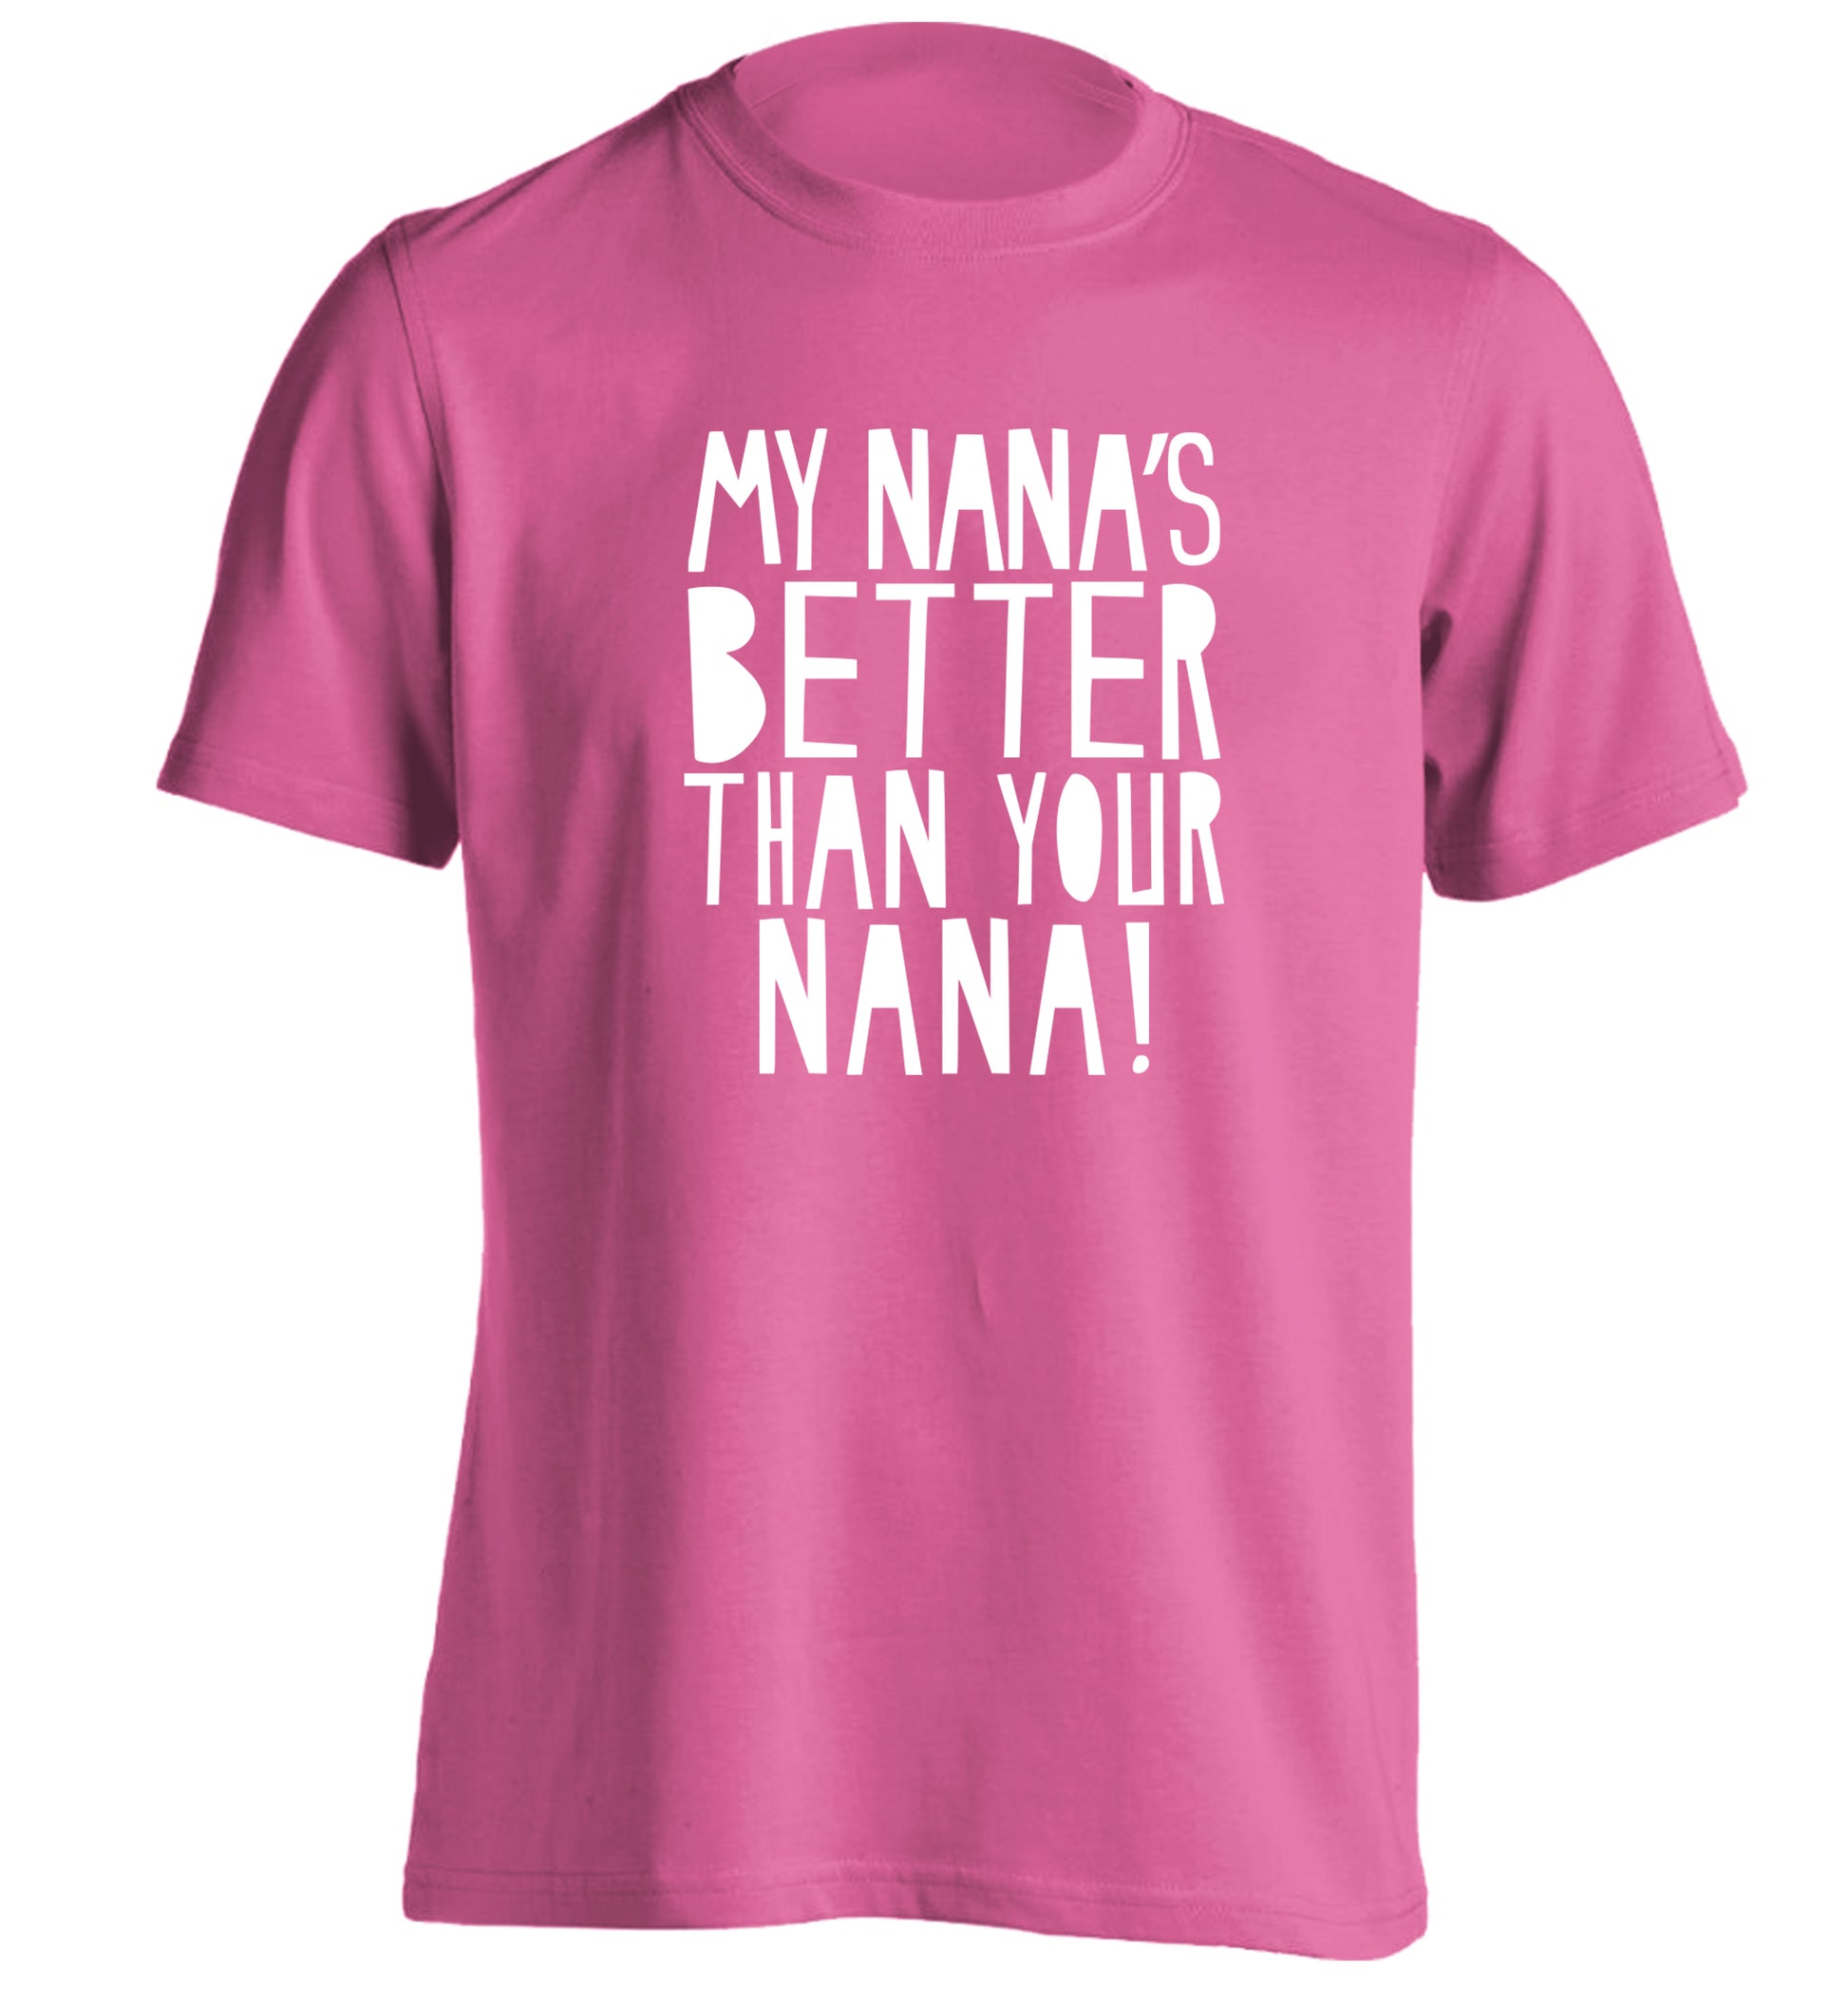 My nana's better than your nana adults unisex pink Tshirt 2XL